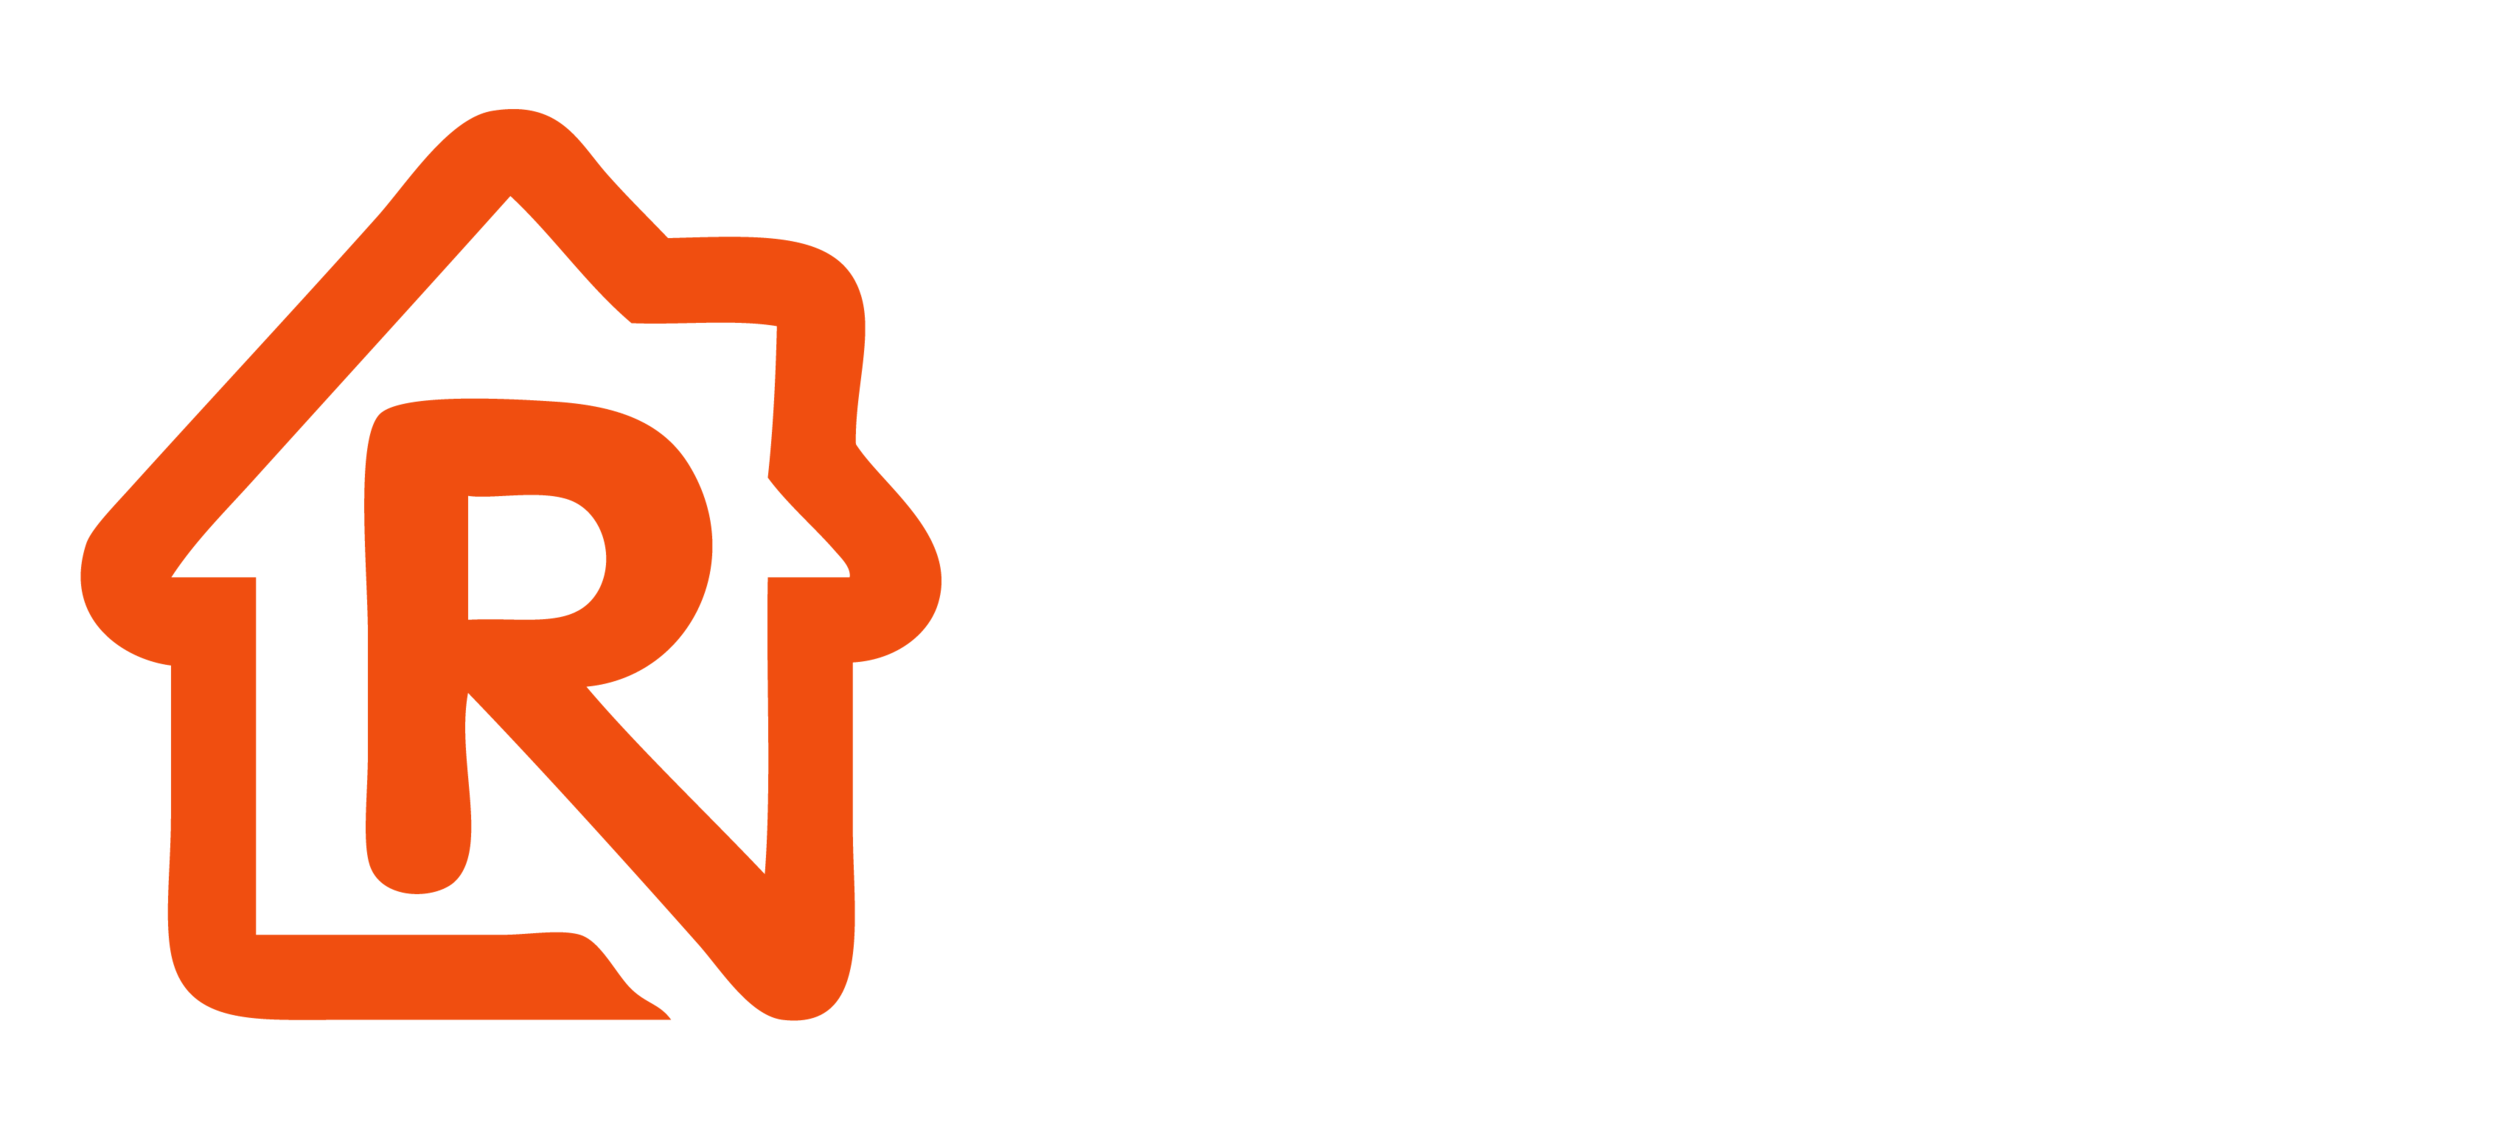 All Dezrez Logos - FINAL_Rezi White.png